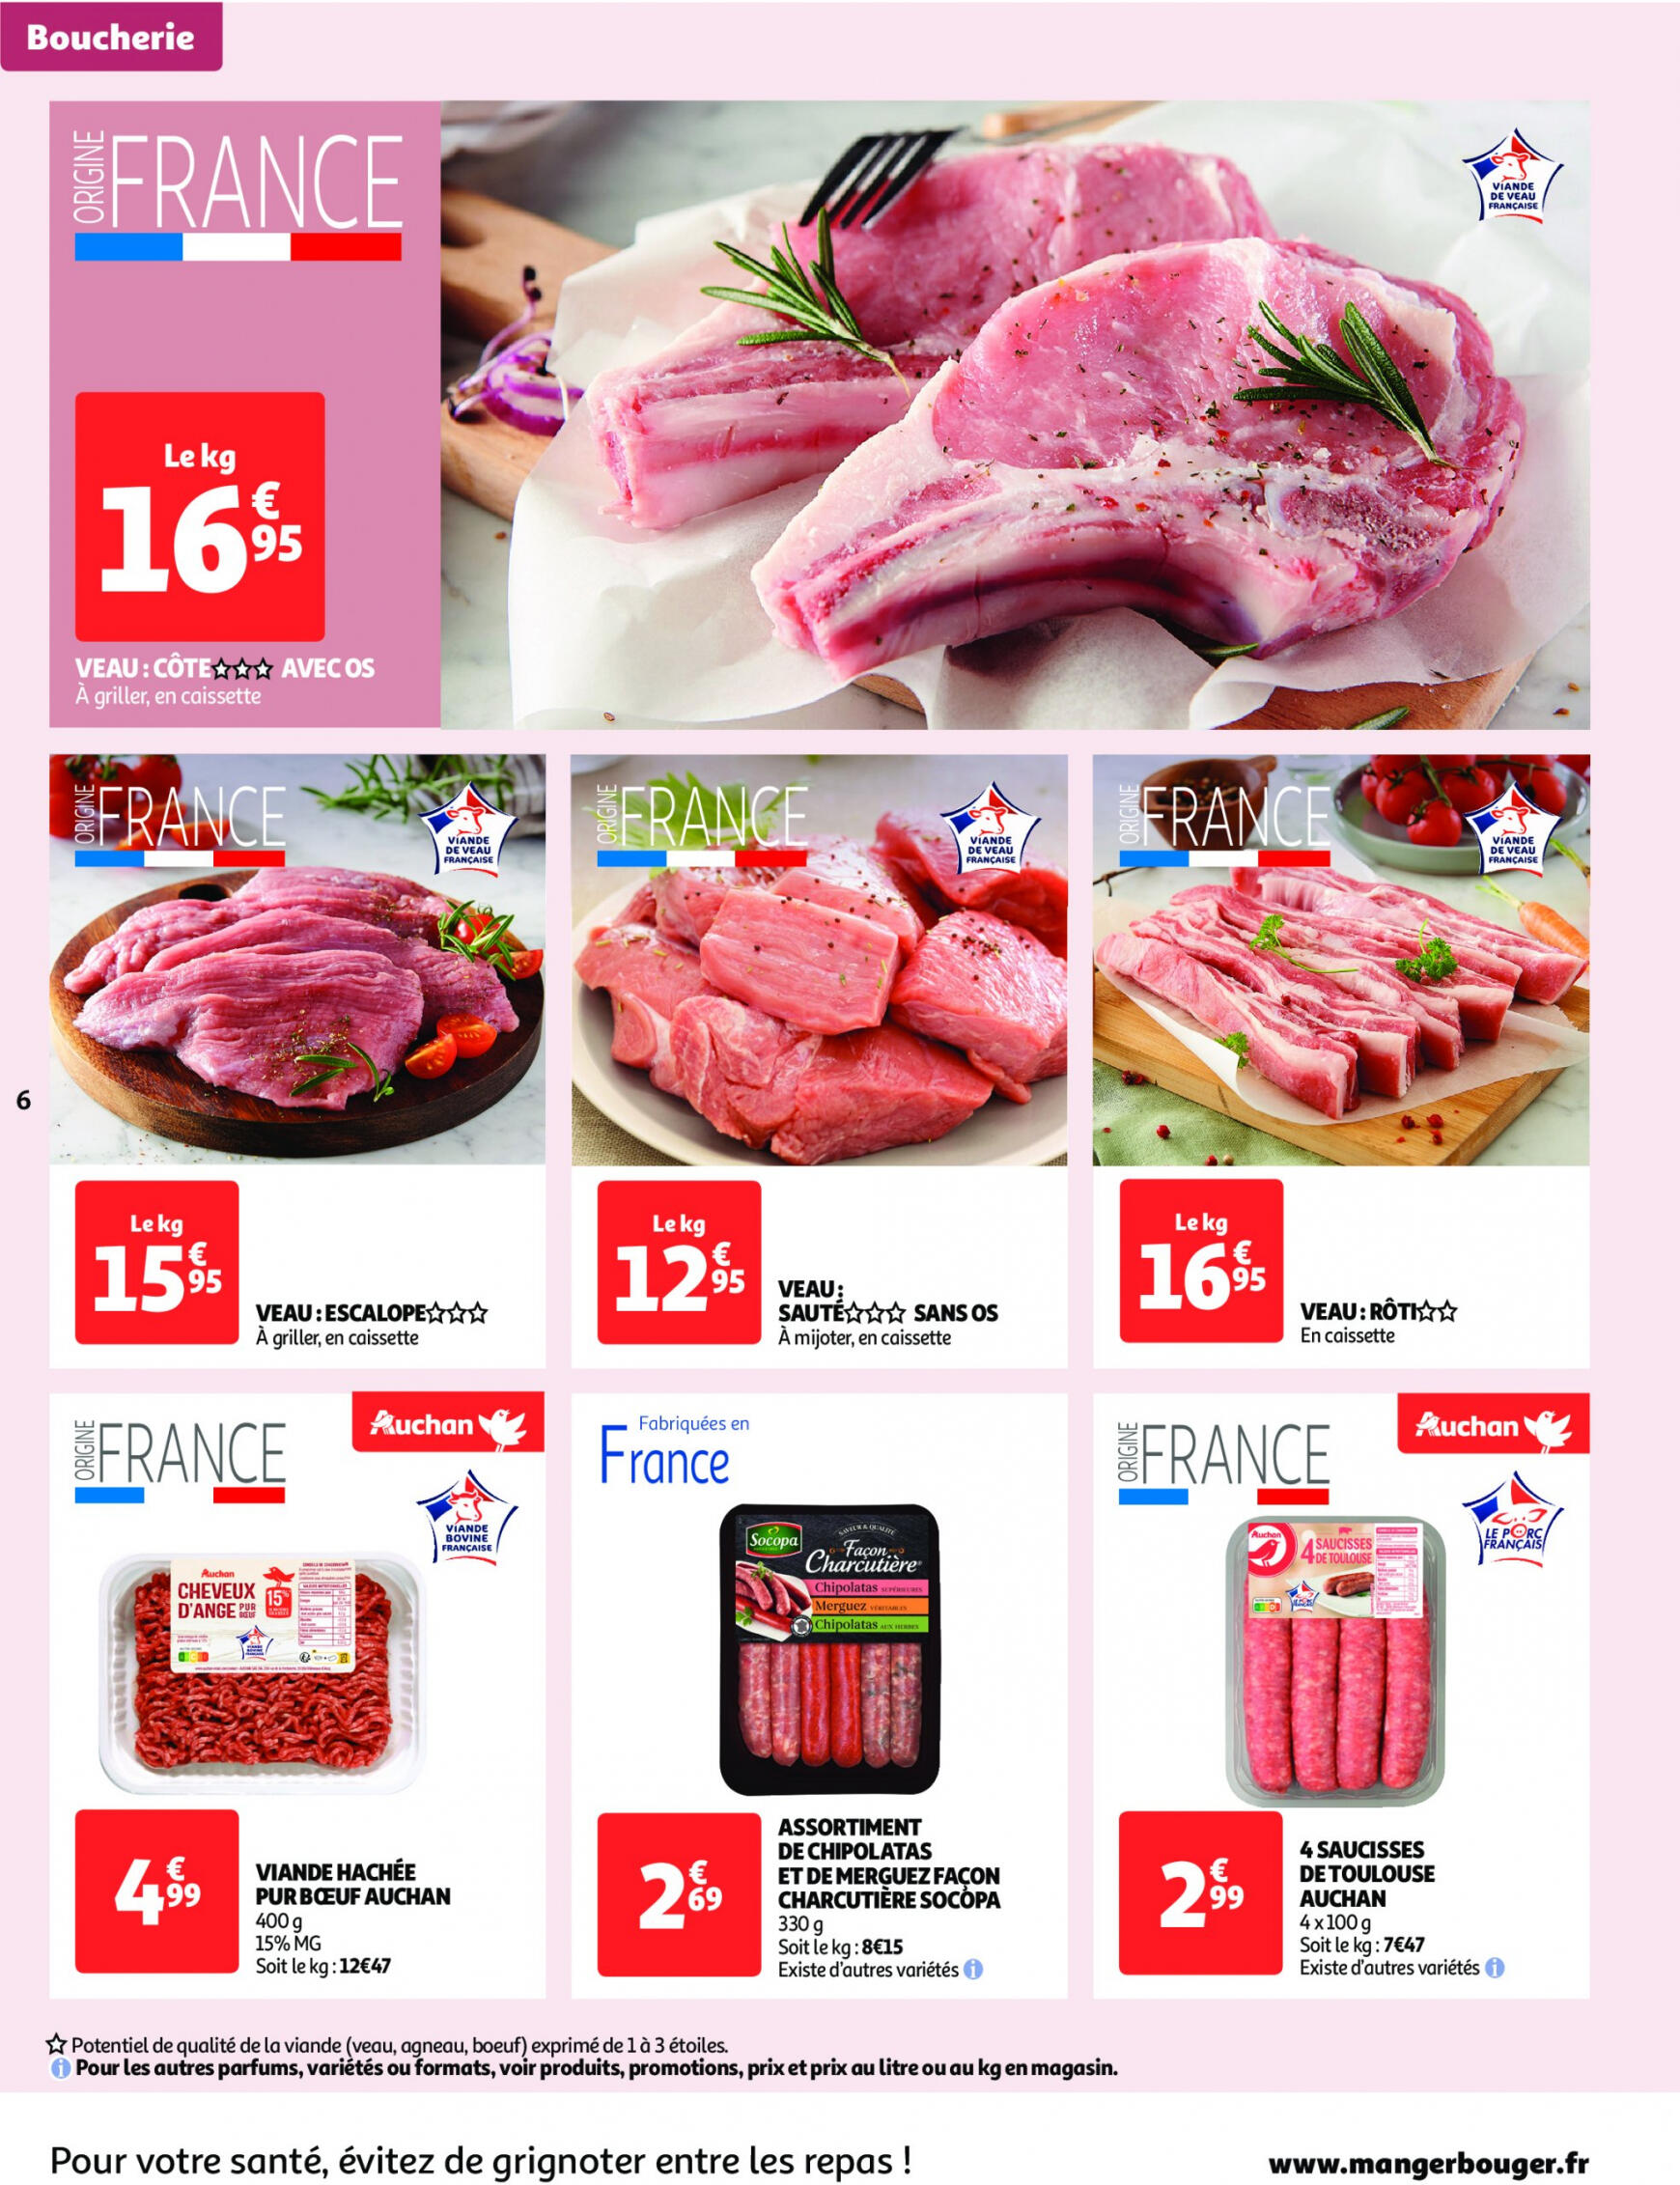 auchan - Auchan - On met le turbot sur les produits de la mer folder huidig 14.05. - 19.05. - page: 6